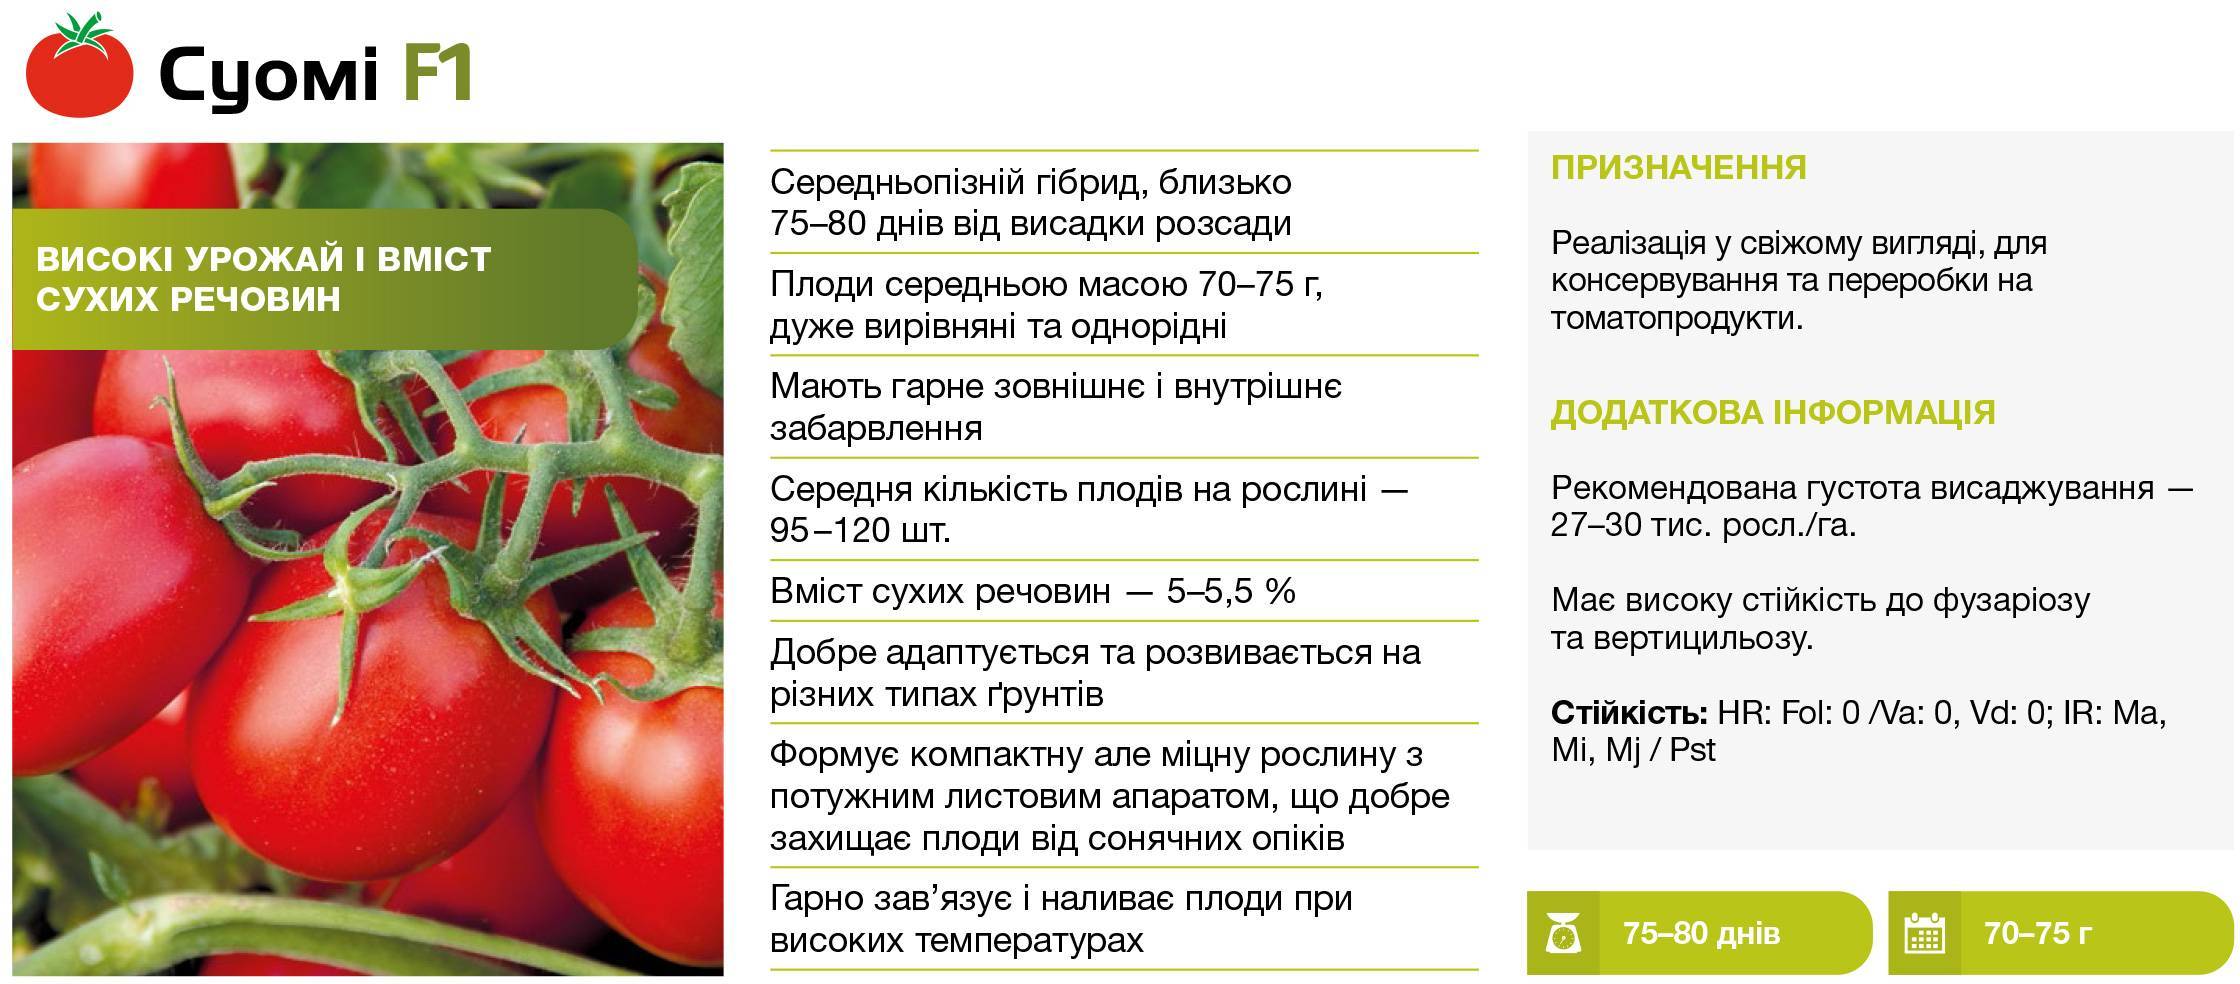 ✅ о томате вспышка: описание сорта, характеристики помидоров, посев